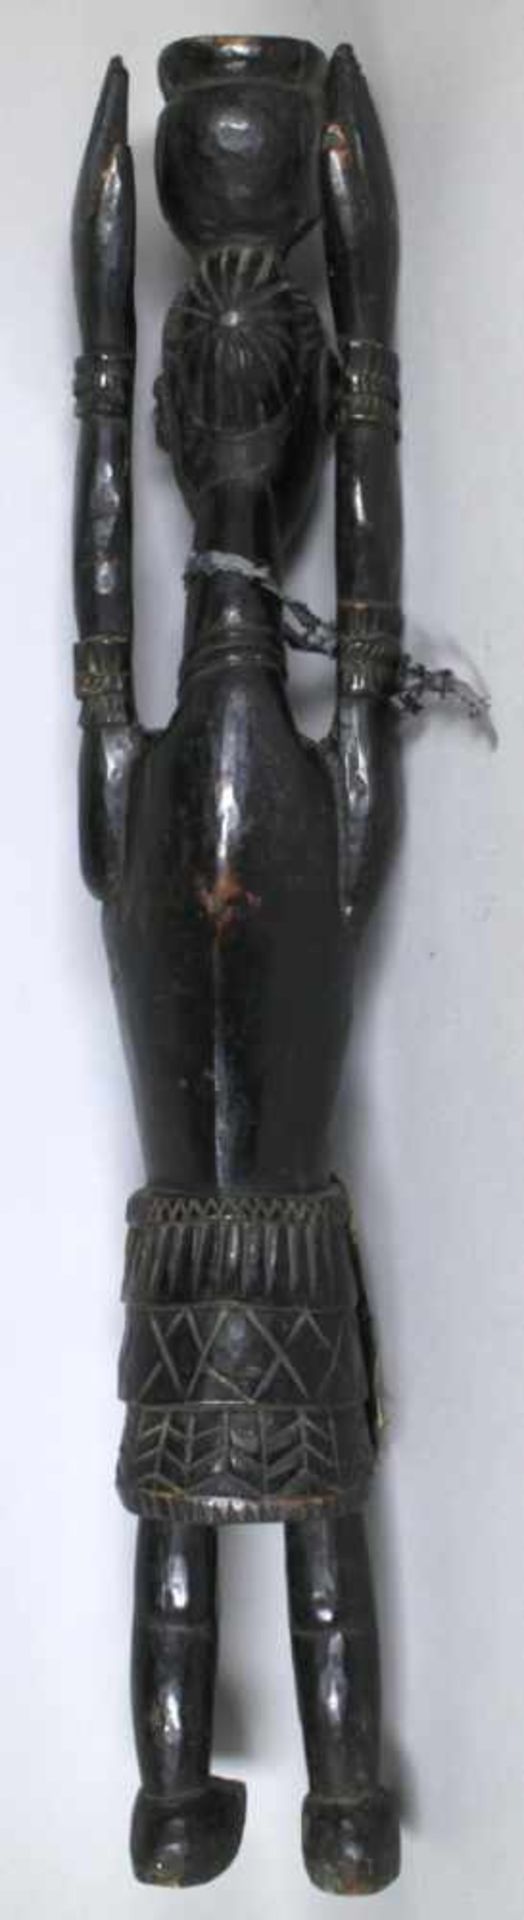 Reliquiar-Figur, Afrika, plastische, stehende, weibliche Darstellung mit Hals- undArmschmuck, auf - Bild 2 aus 3